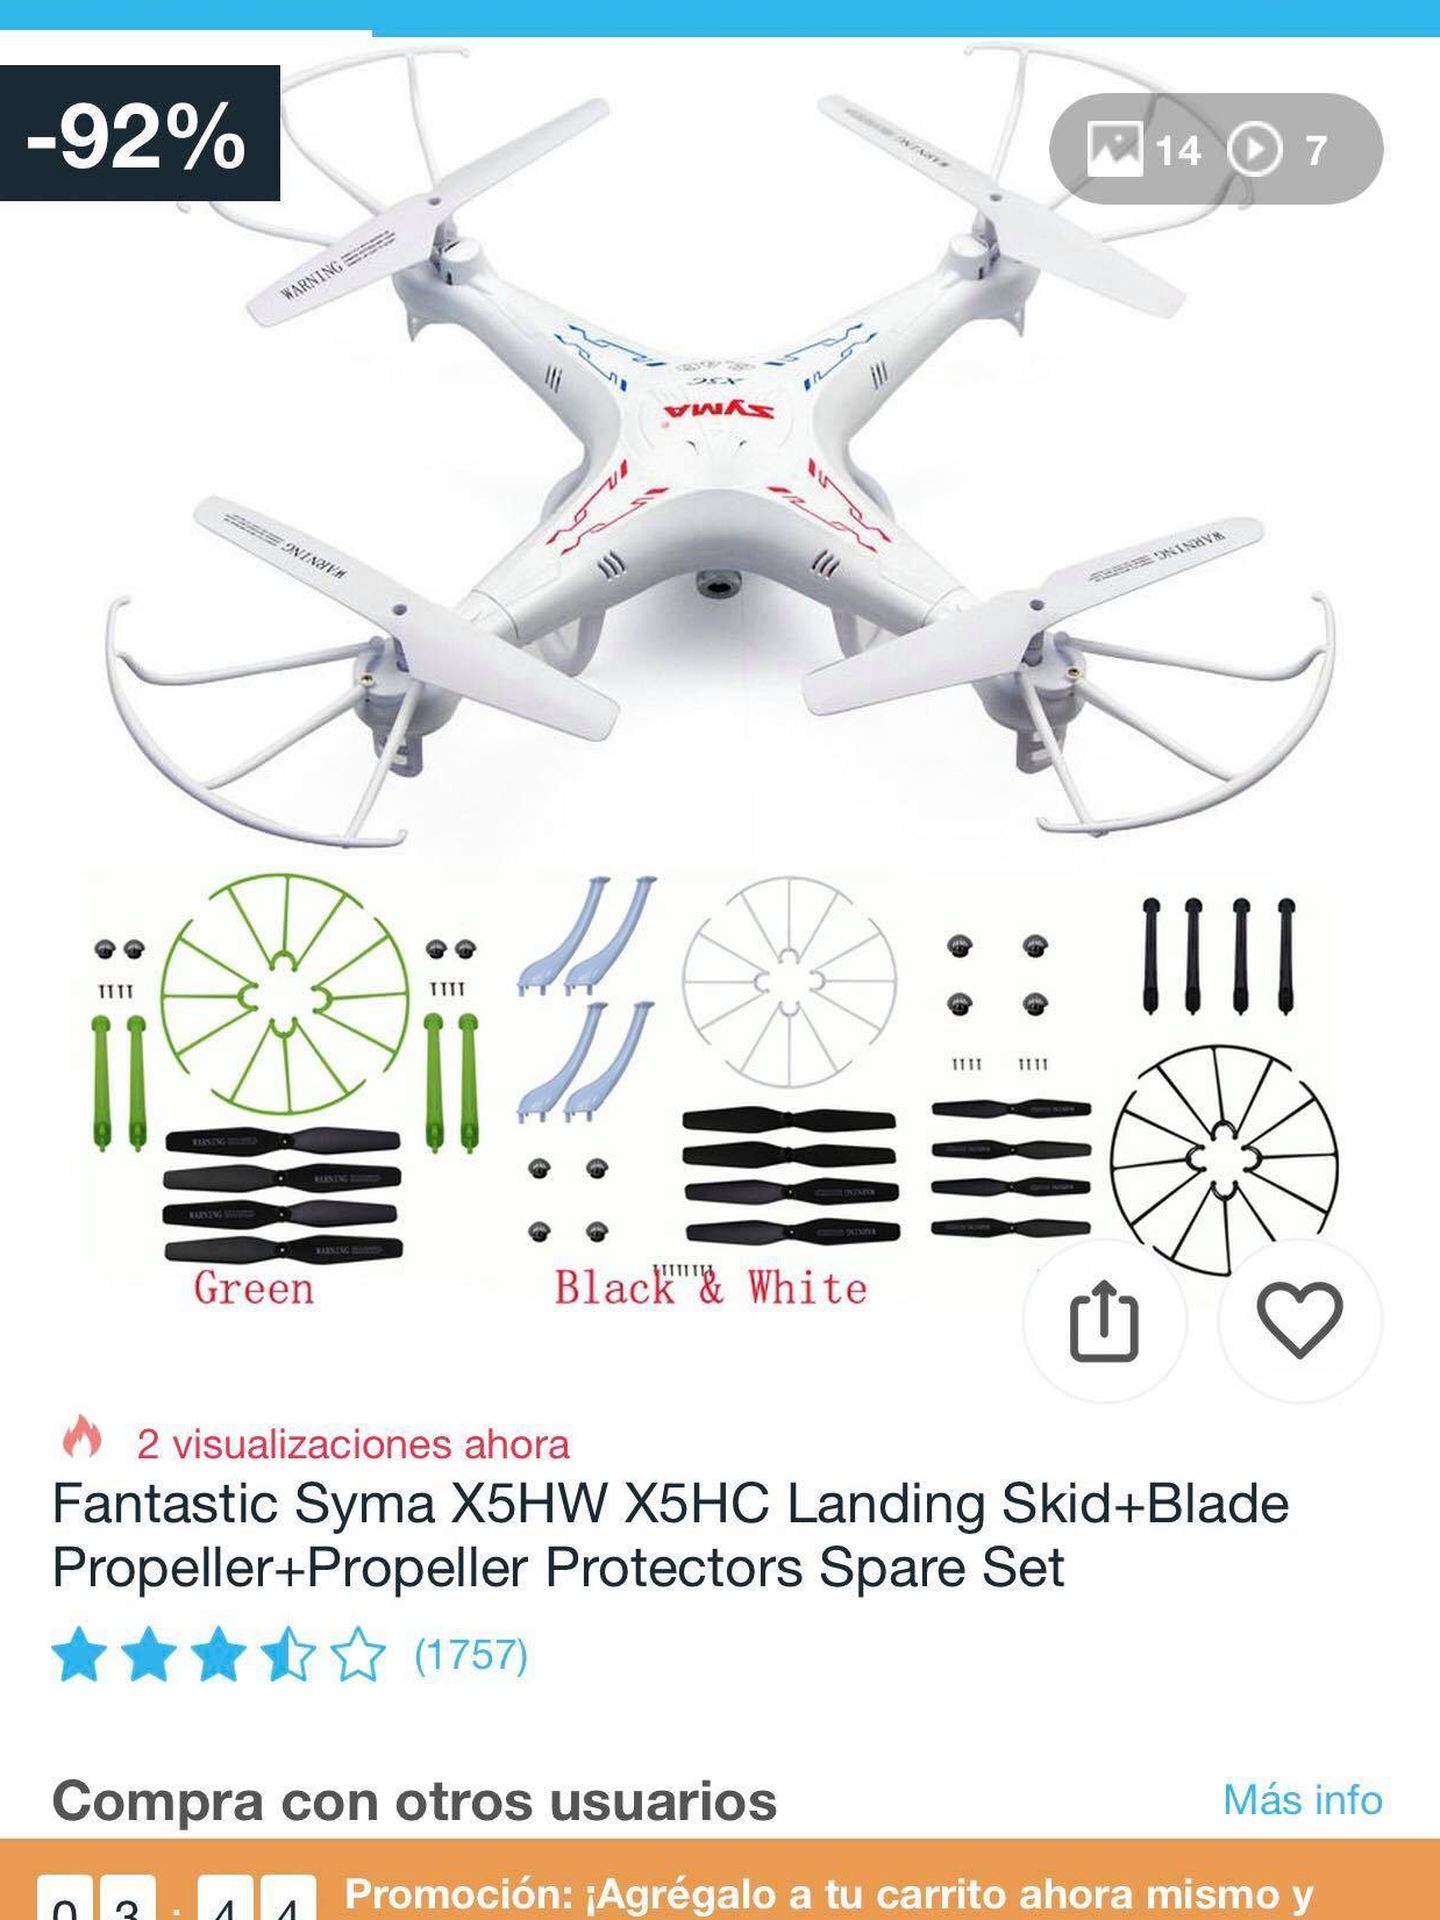 Oferta del 'drone'